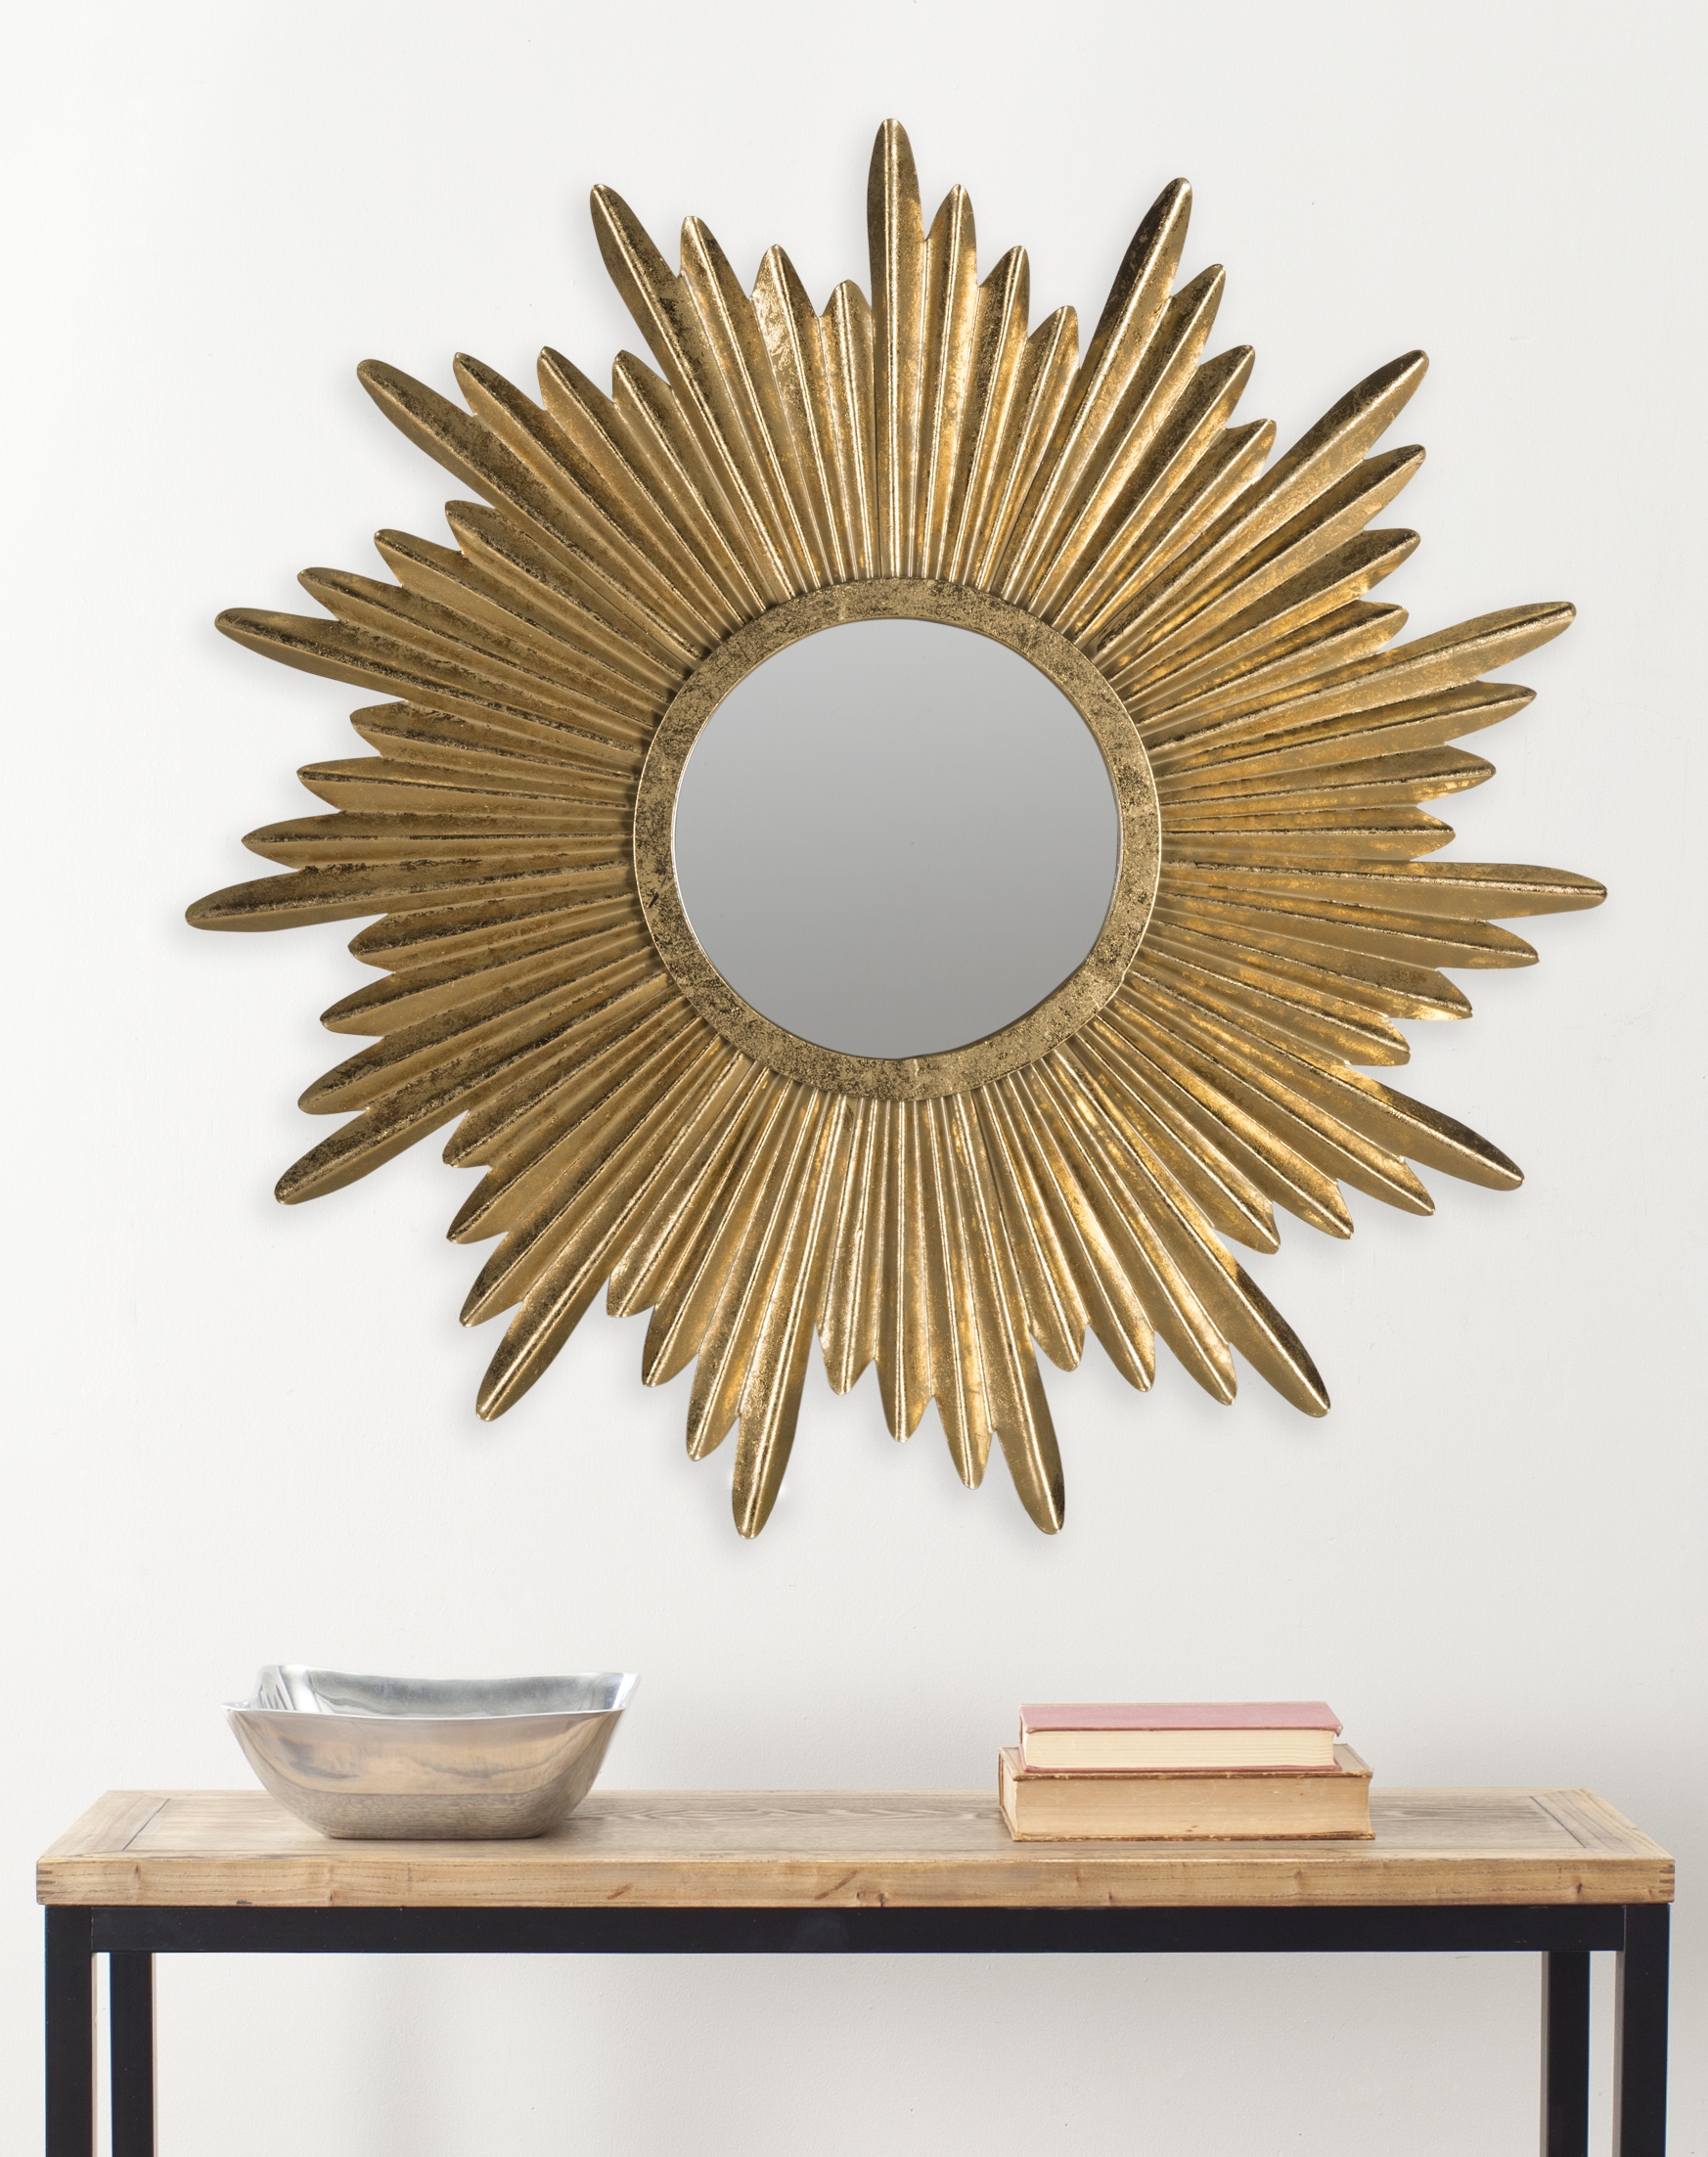 Josephine Sunburst Mirror - Antique Gold - Arlo Home - Image 1